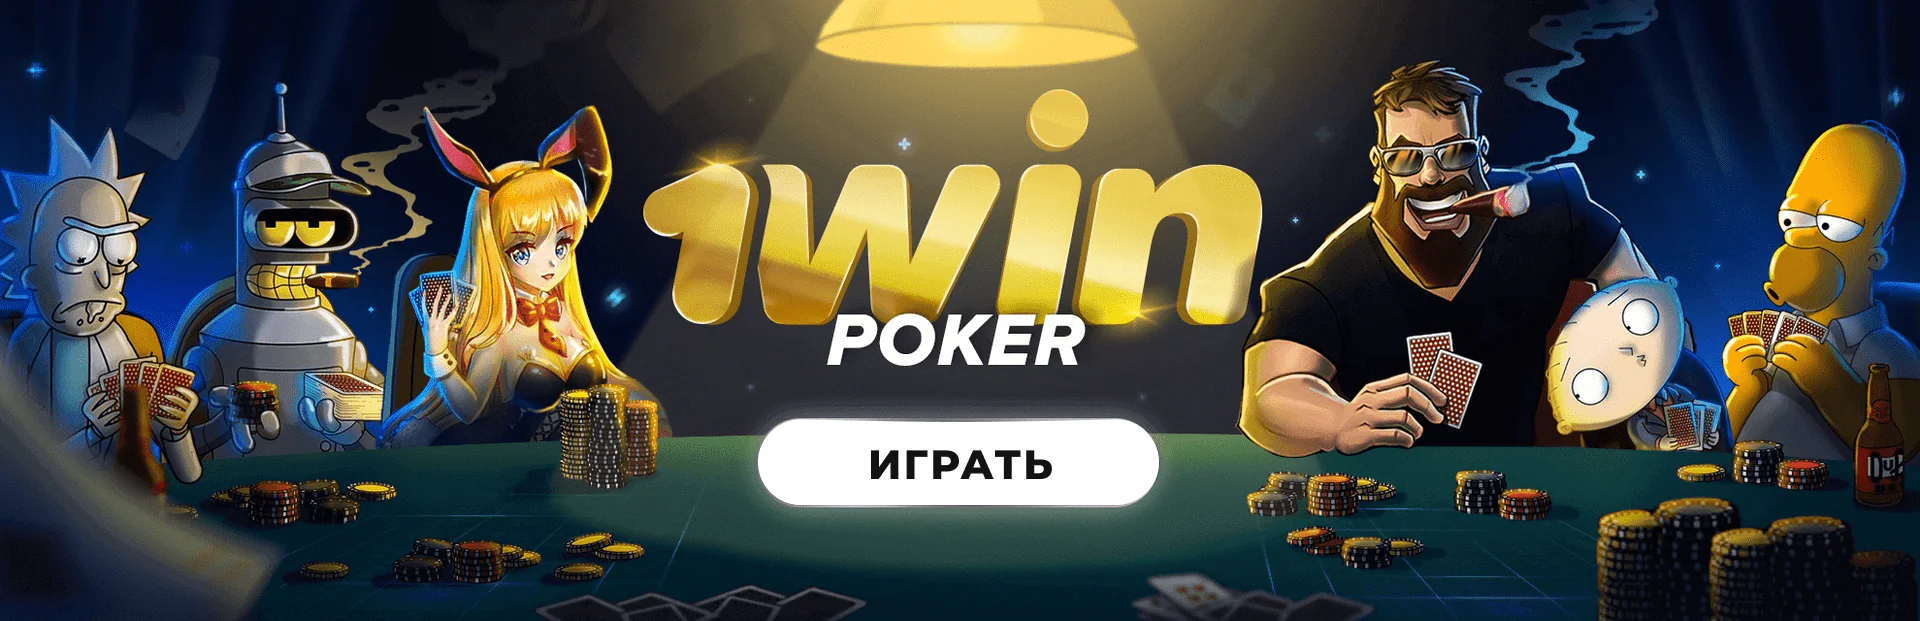 RedTiger производитель игр в казино 1вин Украина 🏆